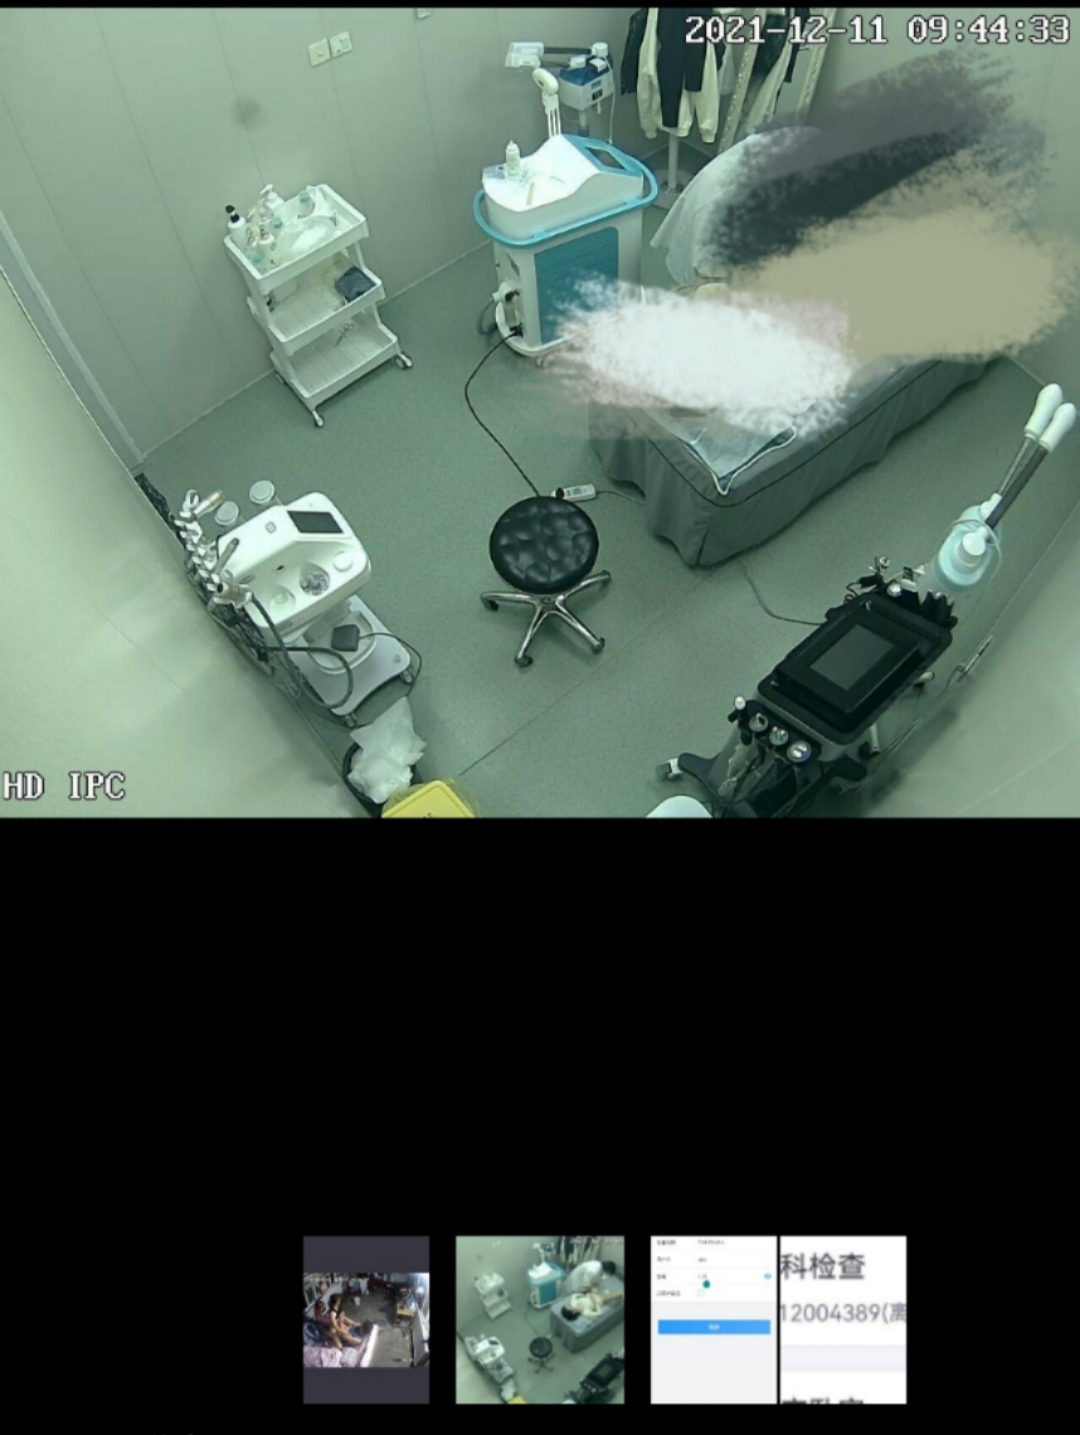 卖家发布的医院妇科手术台监控视频截图。